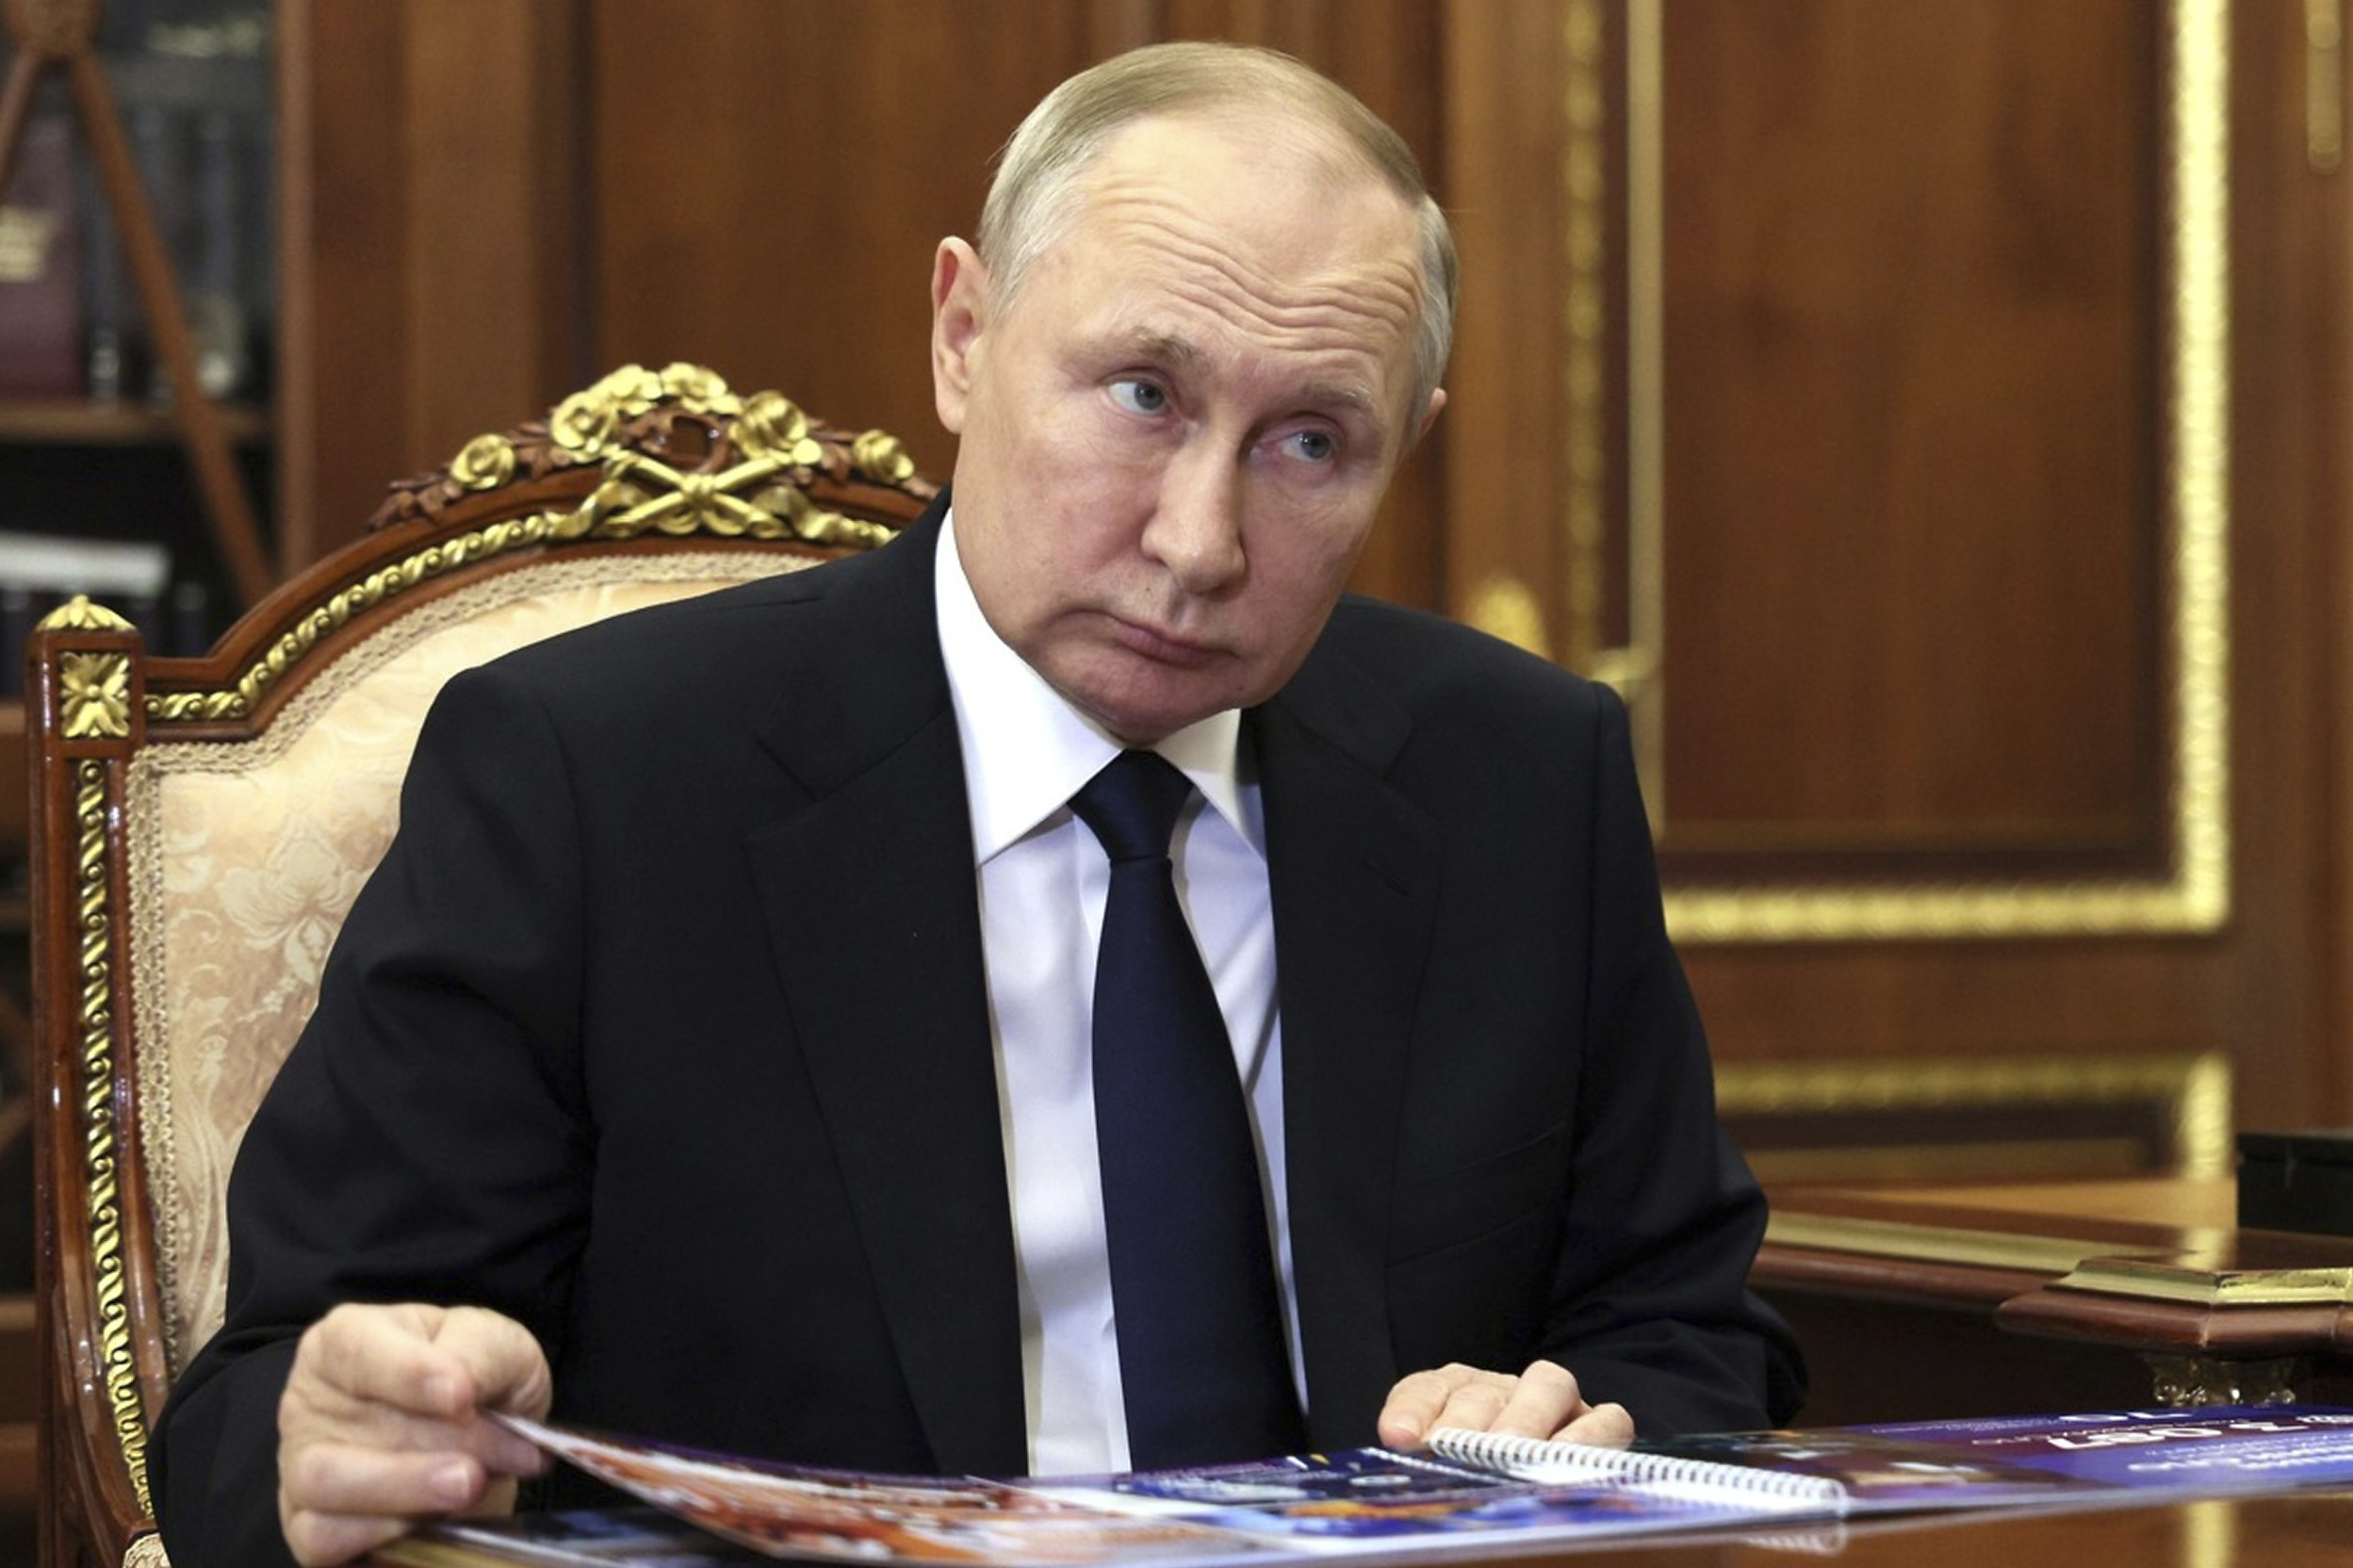 Putyin elismerte, hogy hiba volt tankokat küldeni Budapestre és Prágába